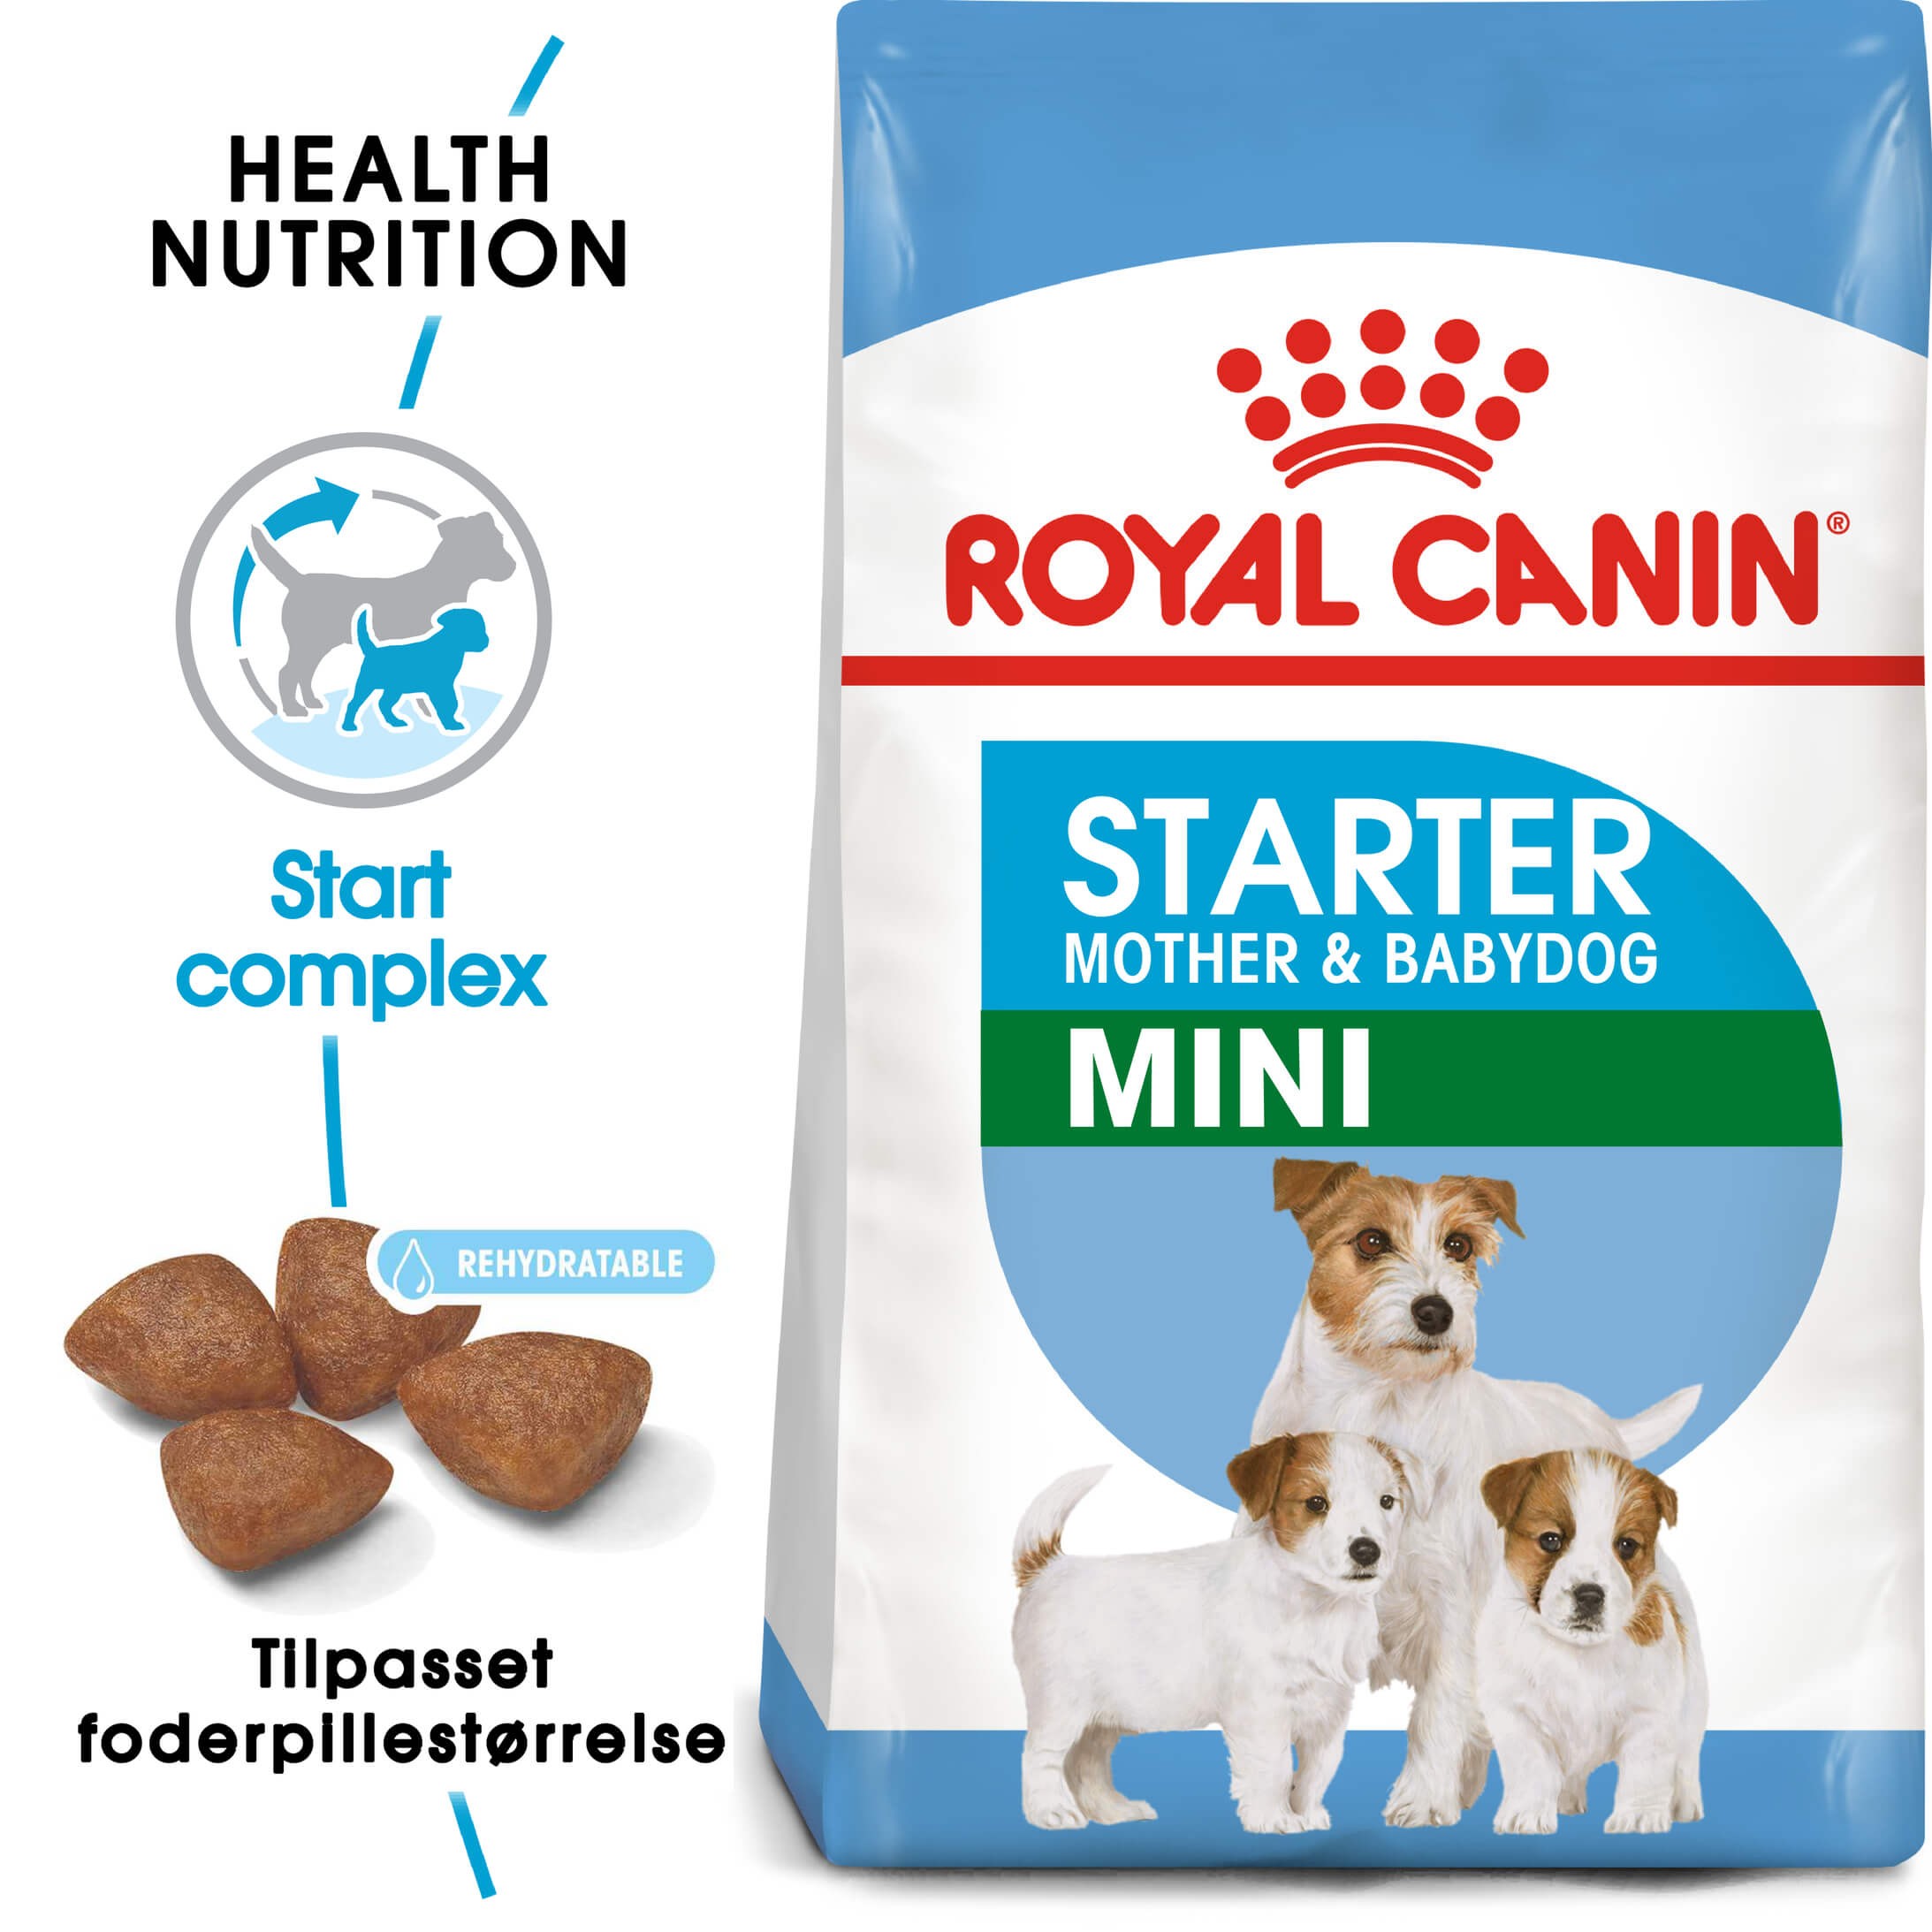 Royal Canin Mini Starter Mother & Babydog hundefoder